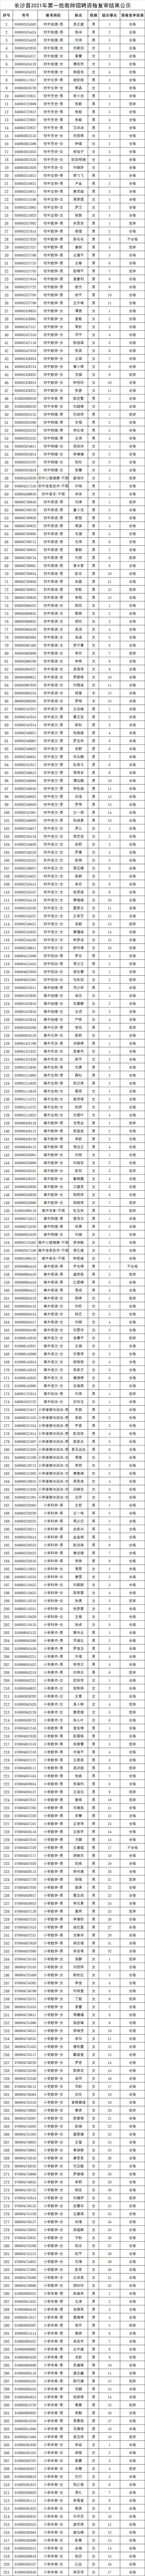 2021年长沙县第一批次教师招聘资格复审结果公示(图1)